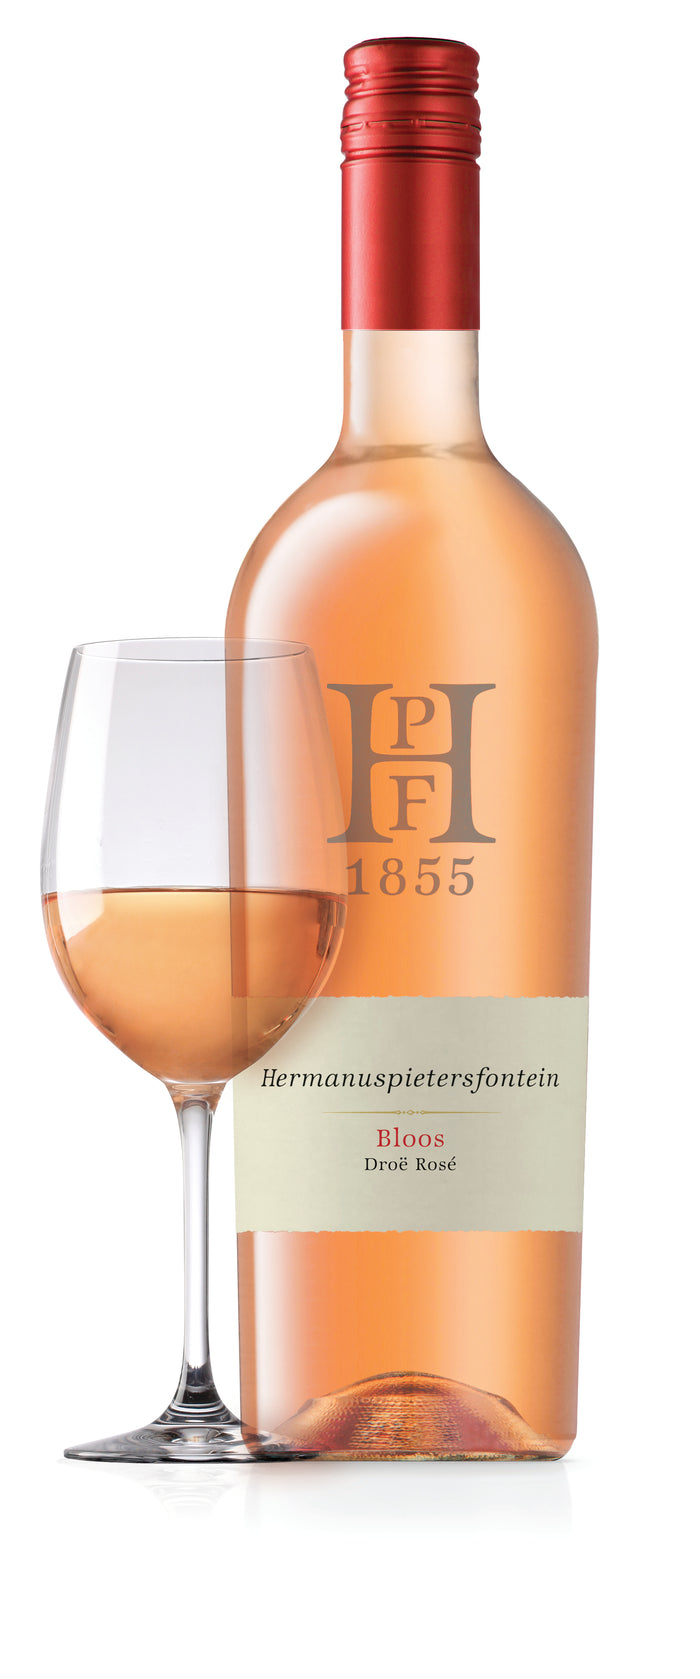 Bloos (Dry Rosé) - Hermanuspietersfontein Wines 